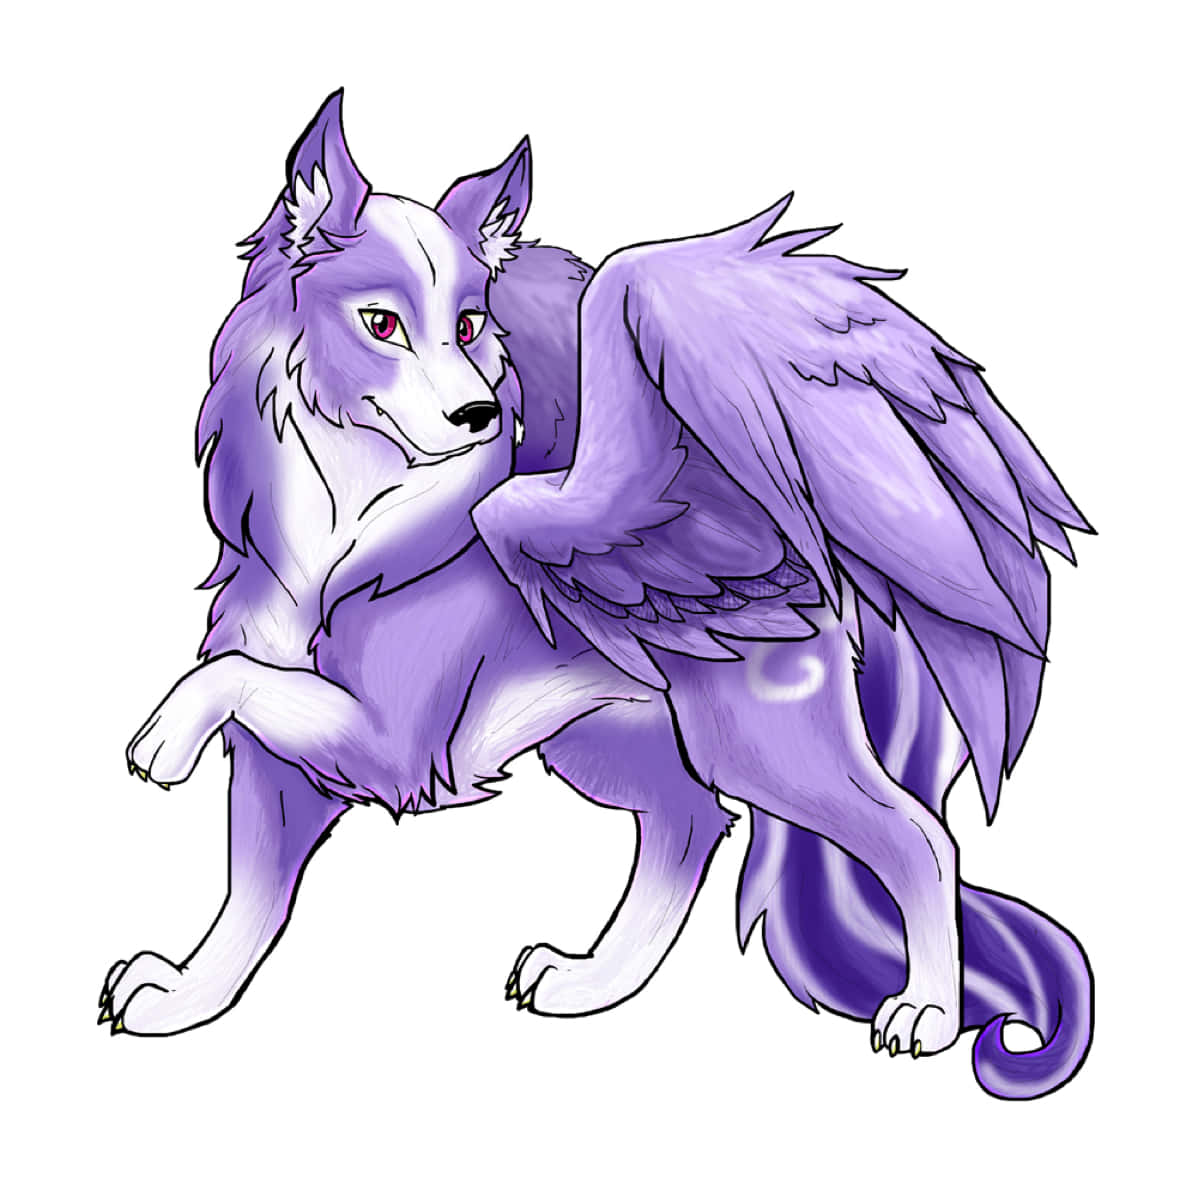 En lilla ulv med vinger på sin ryg Wallpaper